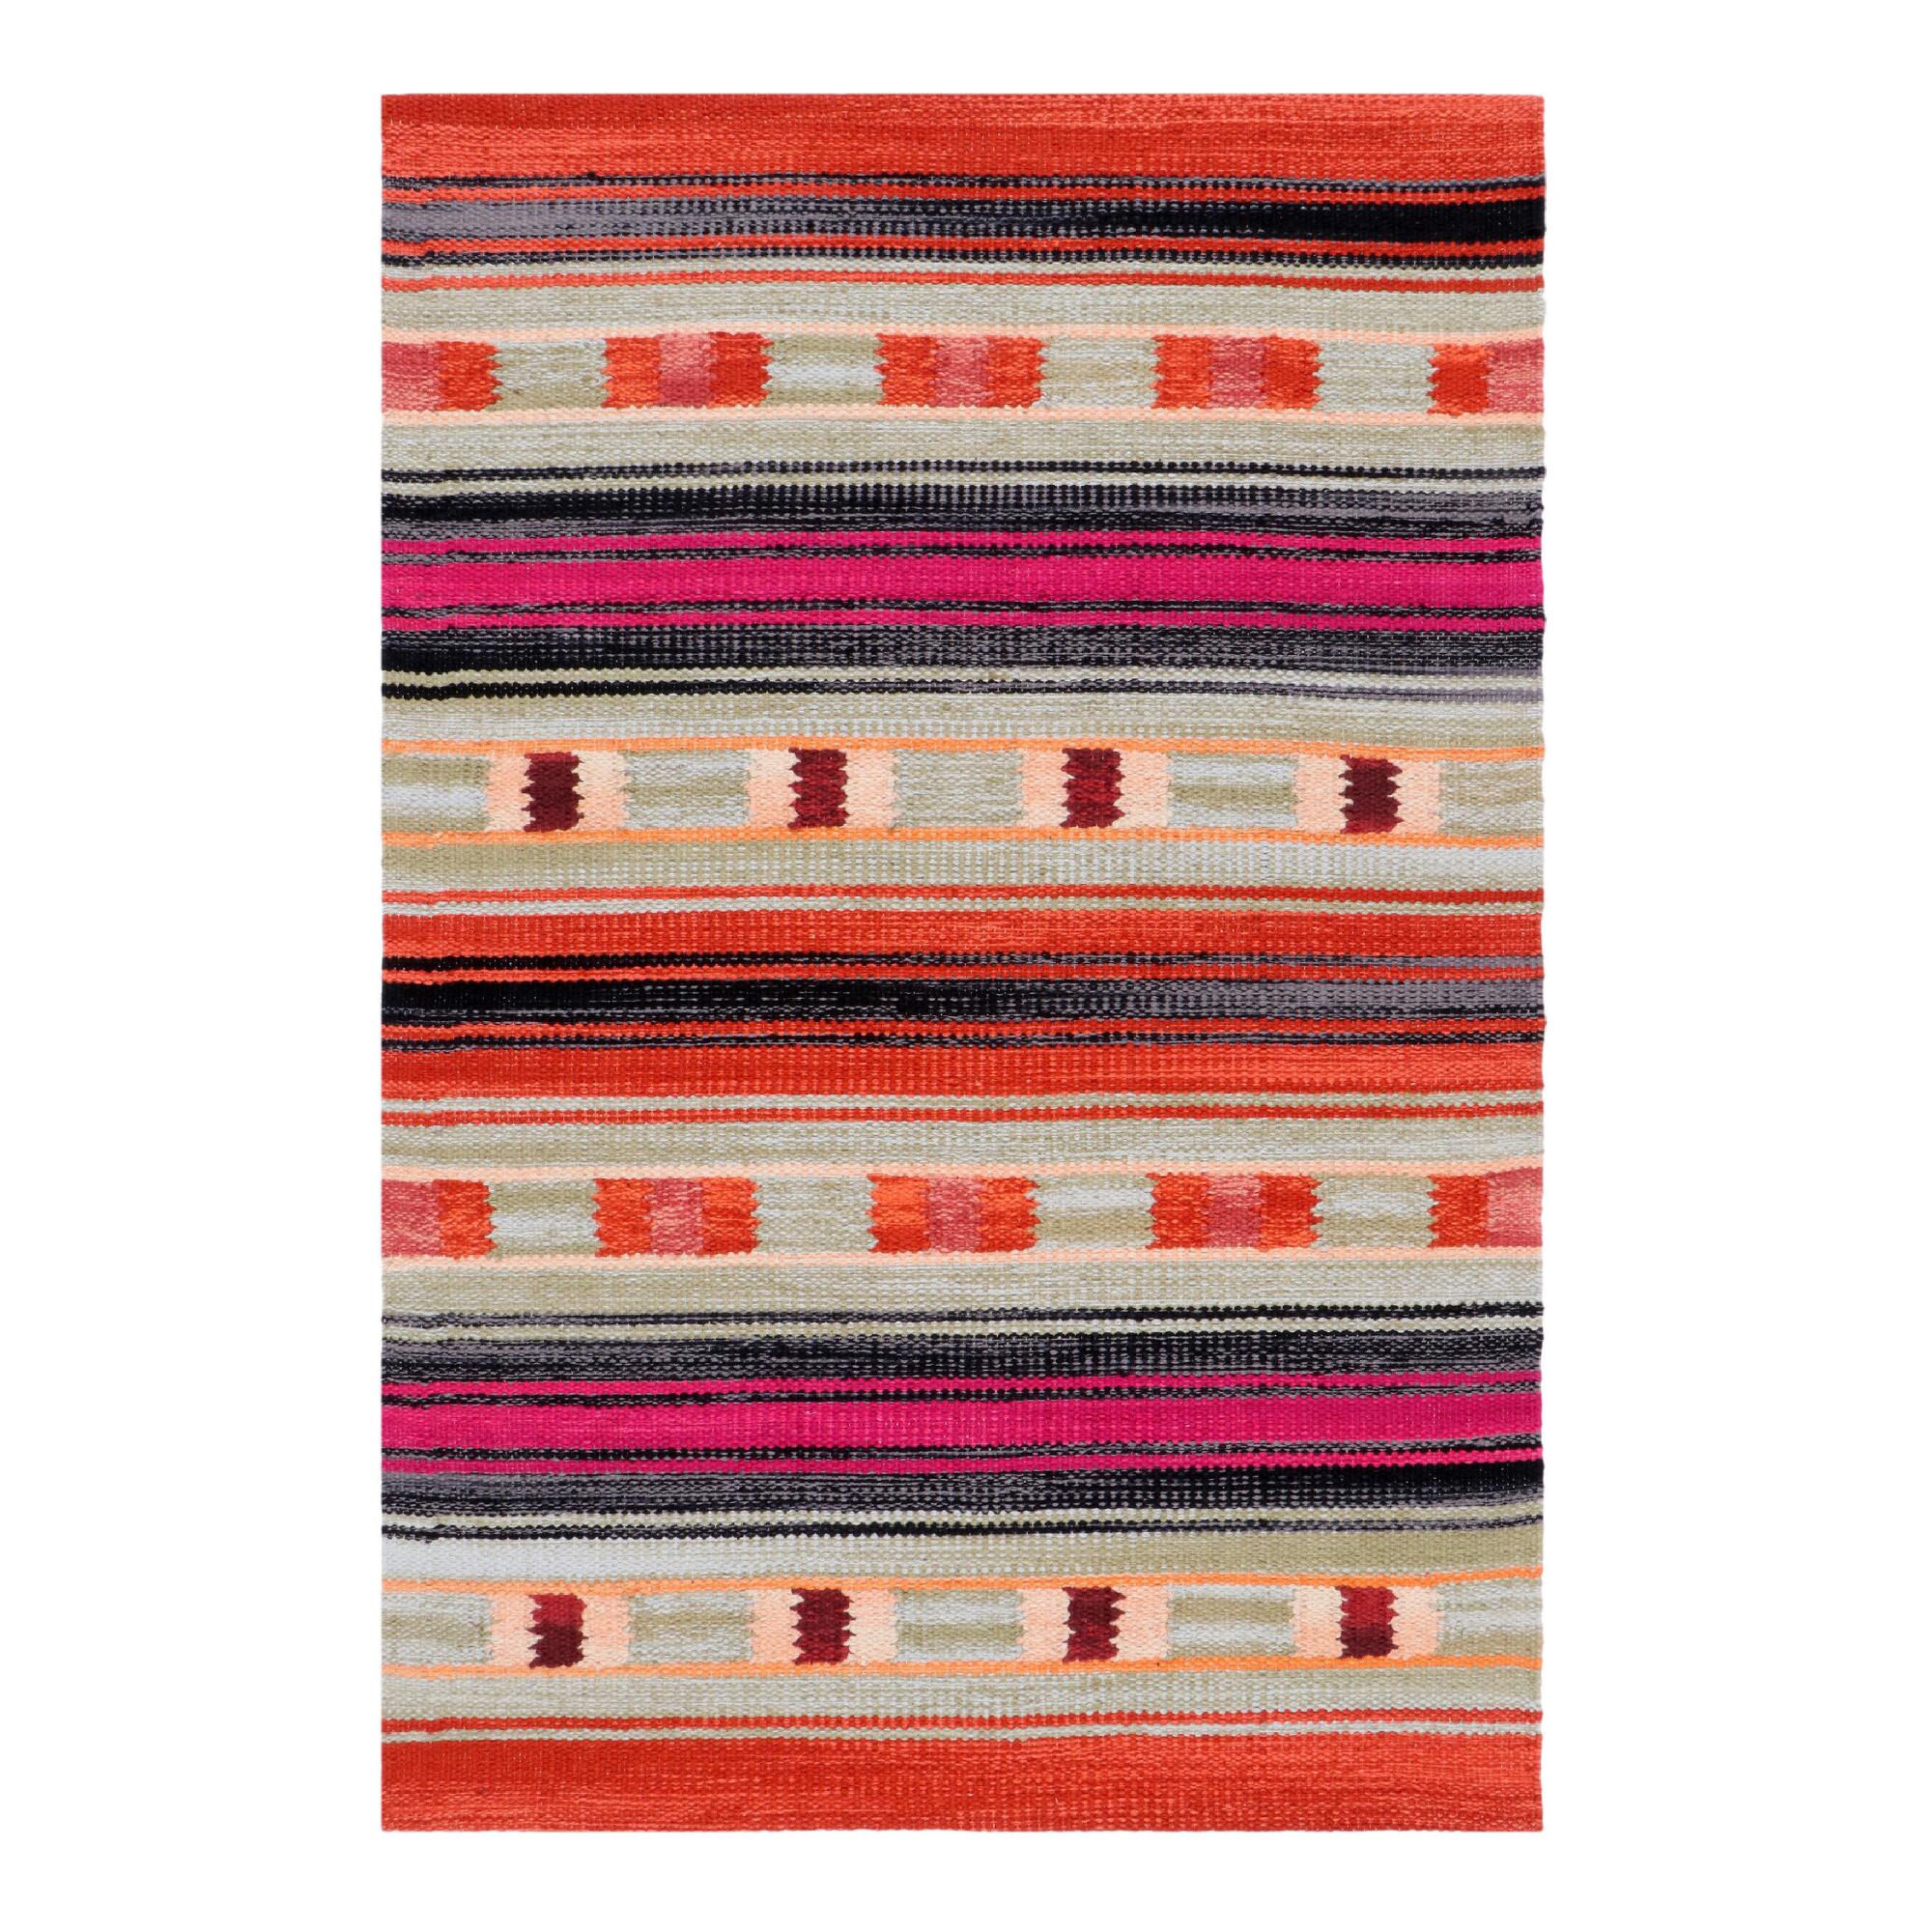 Gray Multicolor Peruvian Stripe Woven Cotton Area Rug - 2' x 3' by World Market